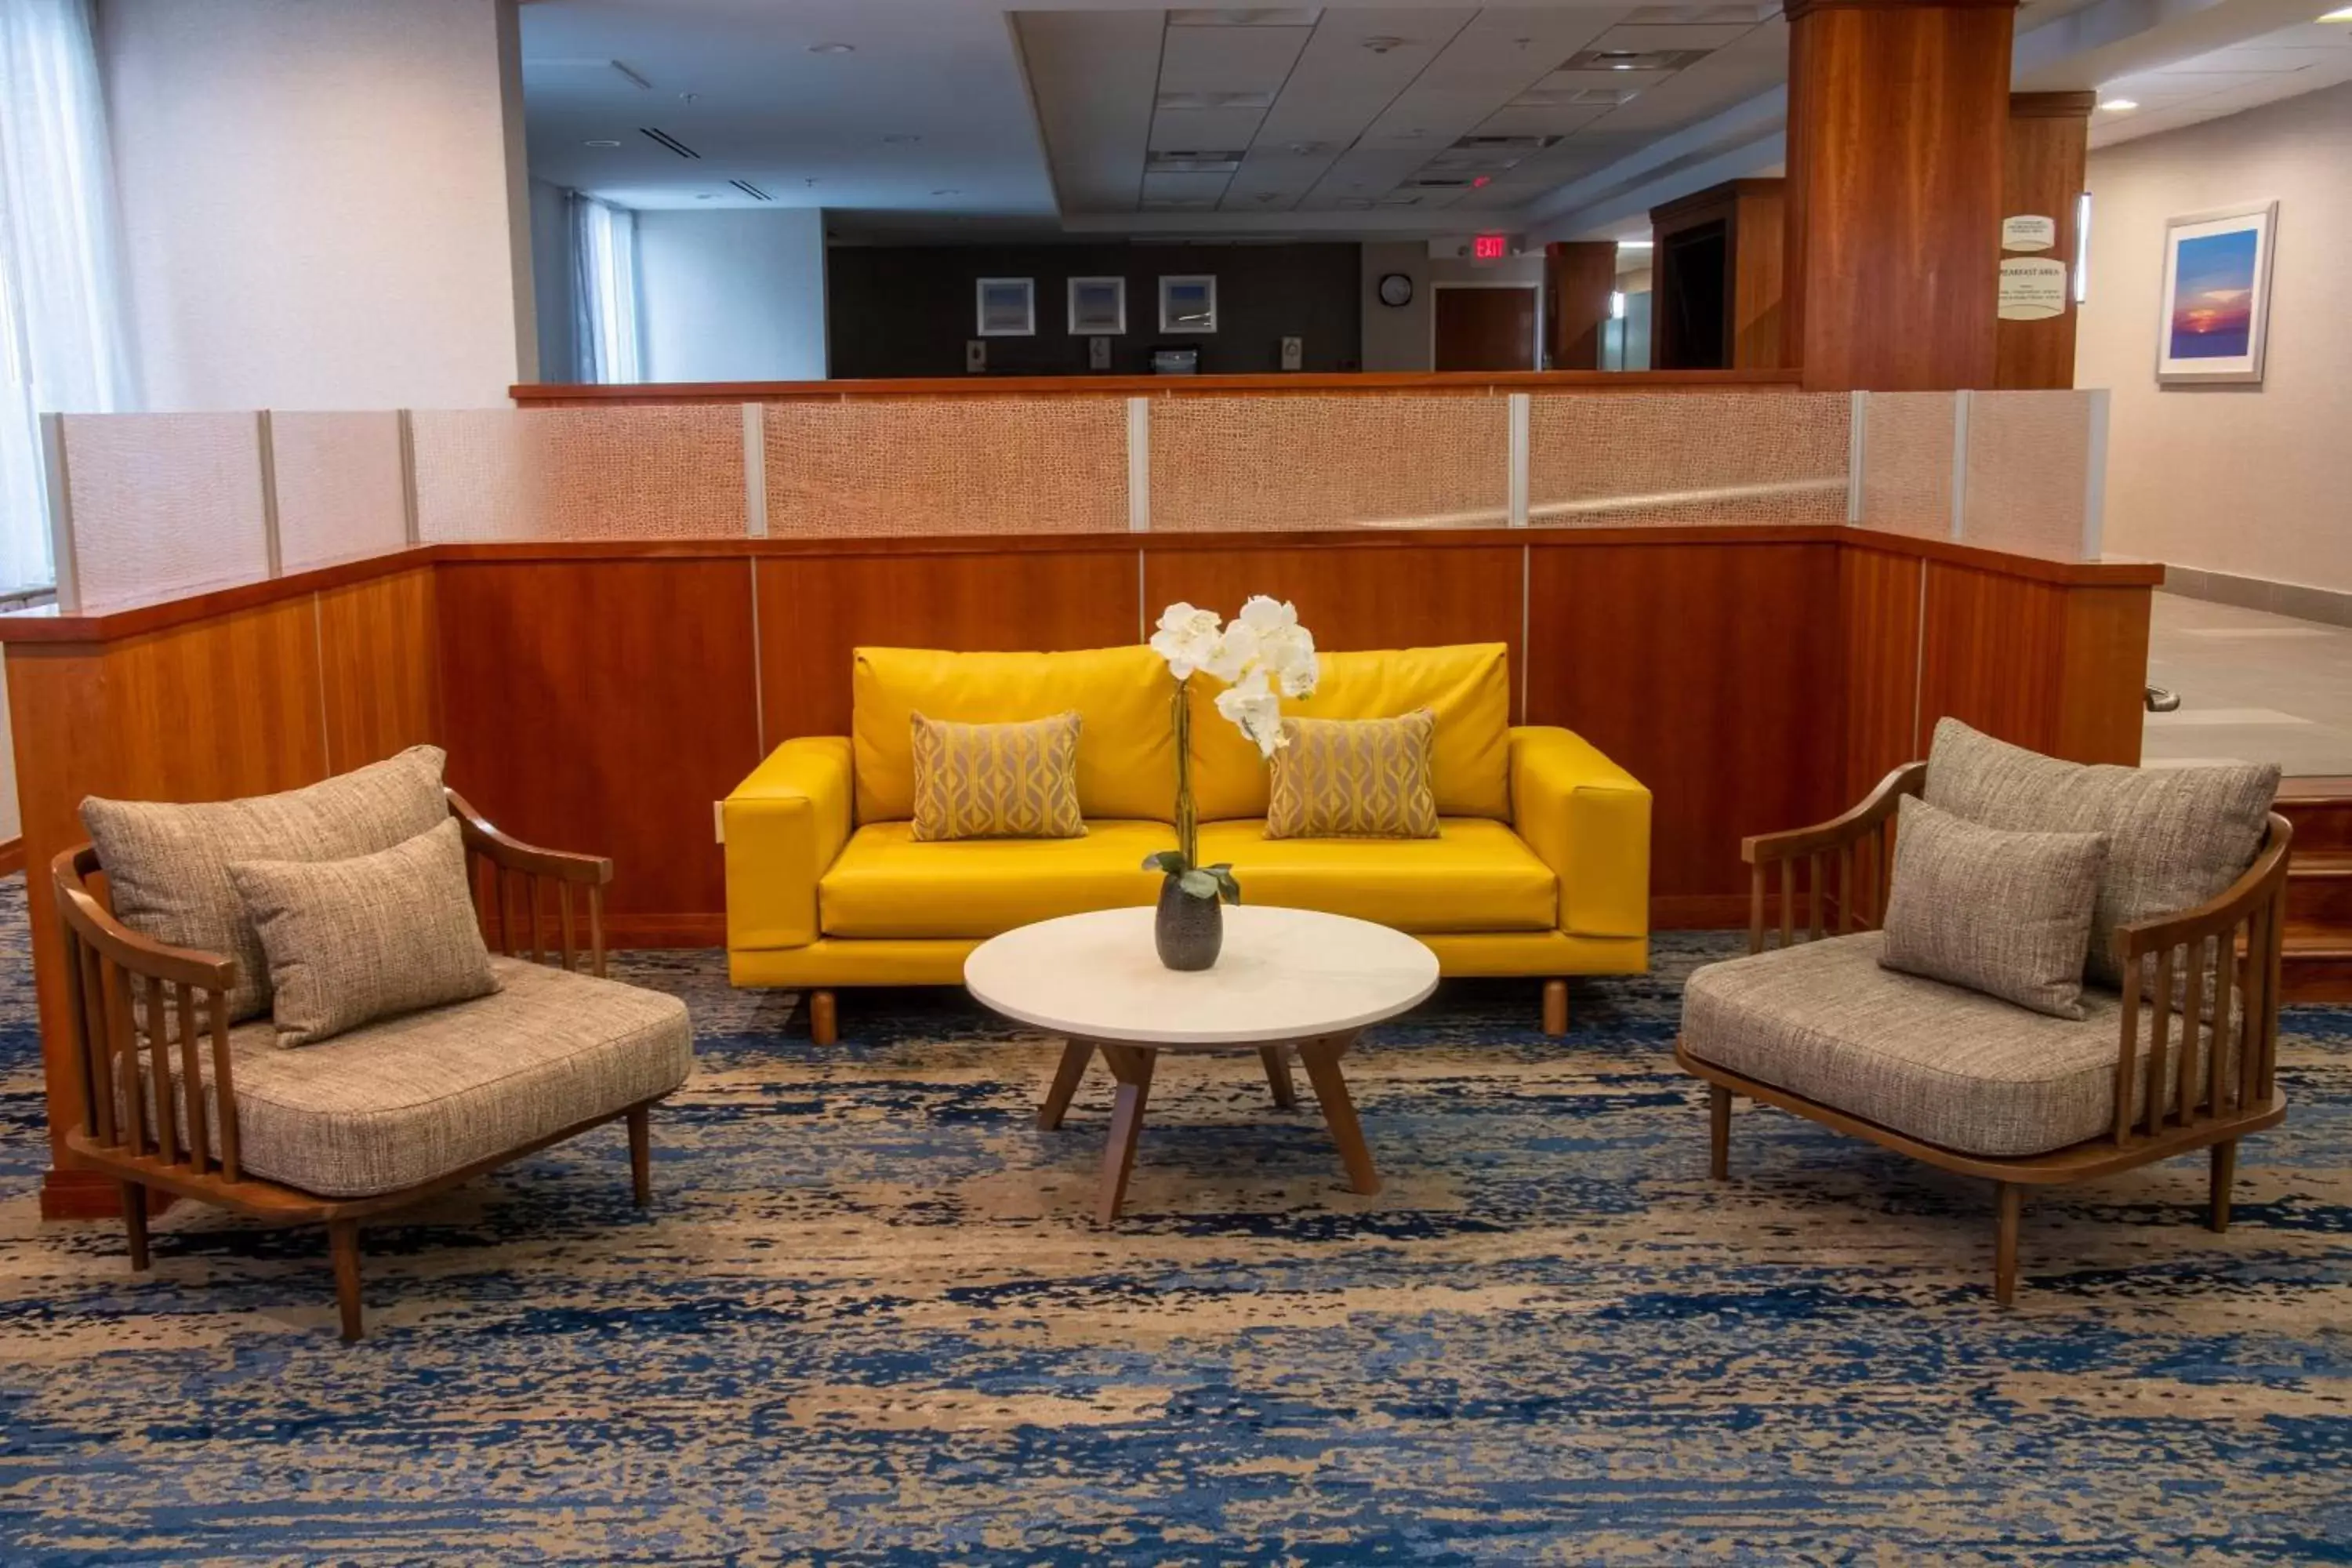 Lobby or reception, Lobby/Reception in Fairfield Inn & Suites Anaheim North Buena Park